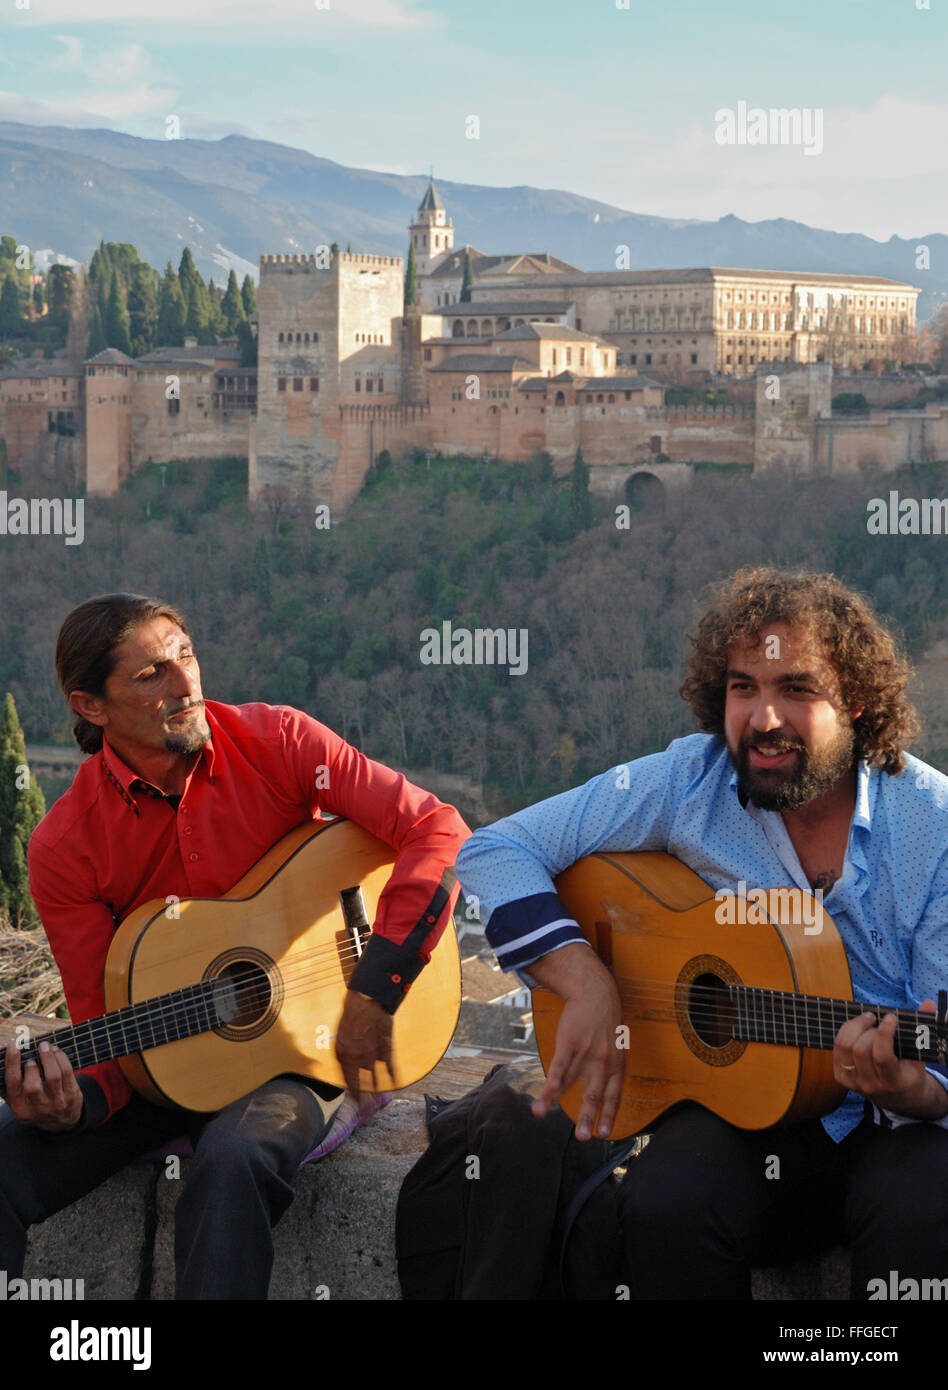 Gypsies playing guitar at Mirador de San Nicolas, Granada, Spain. Stock Photo